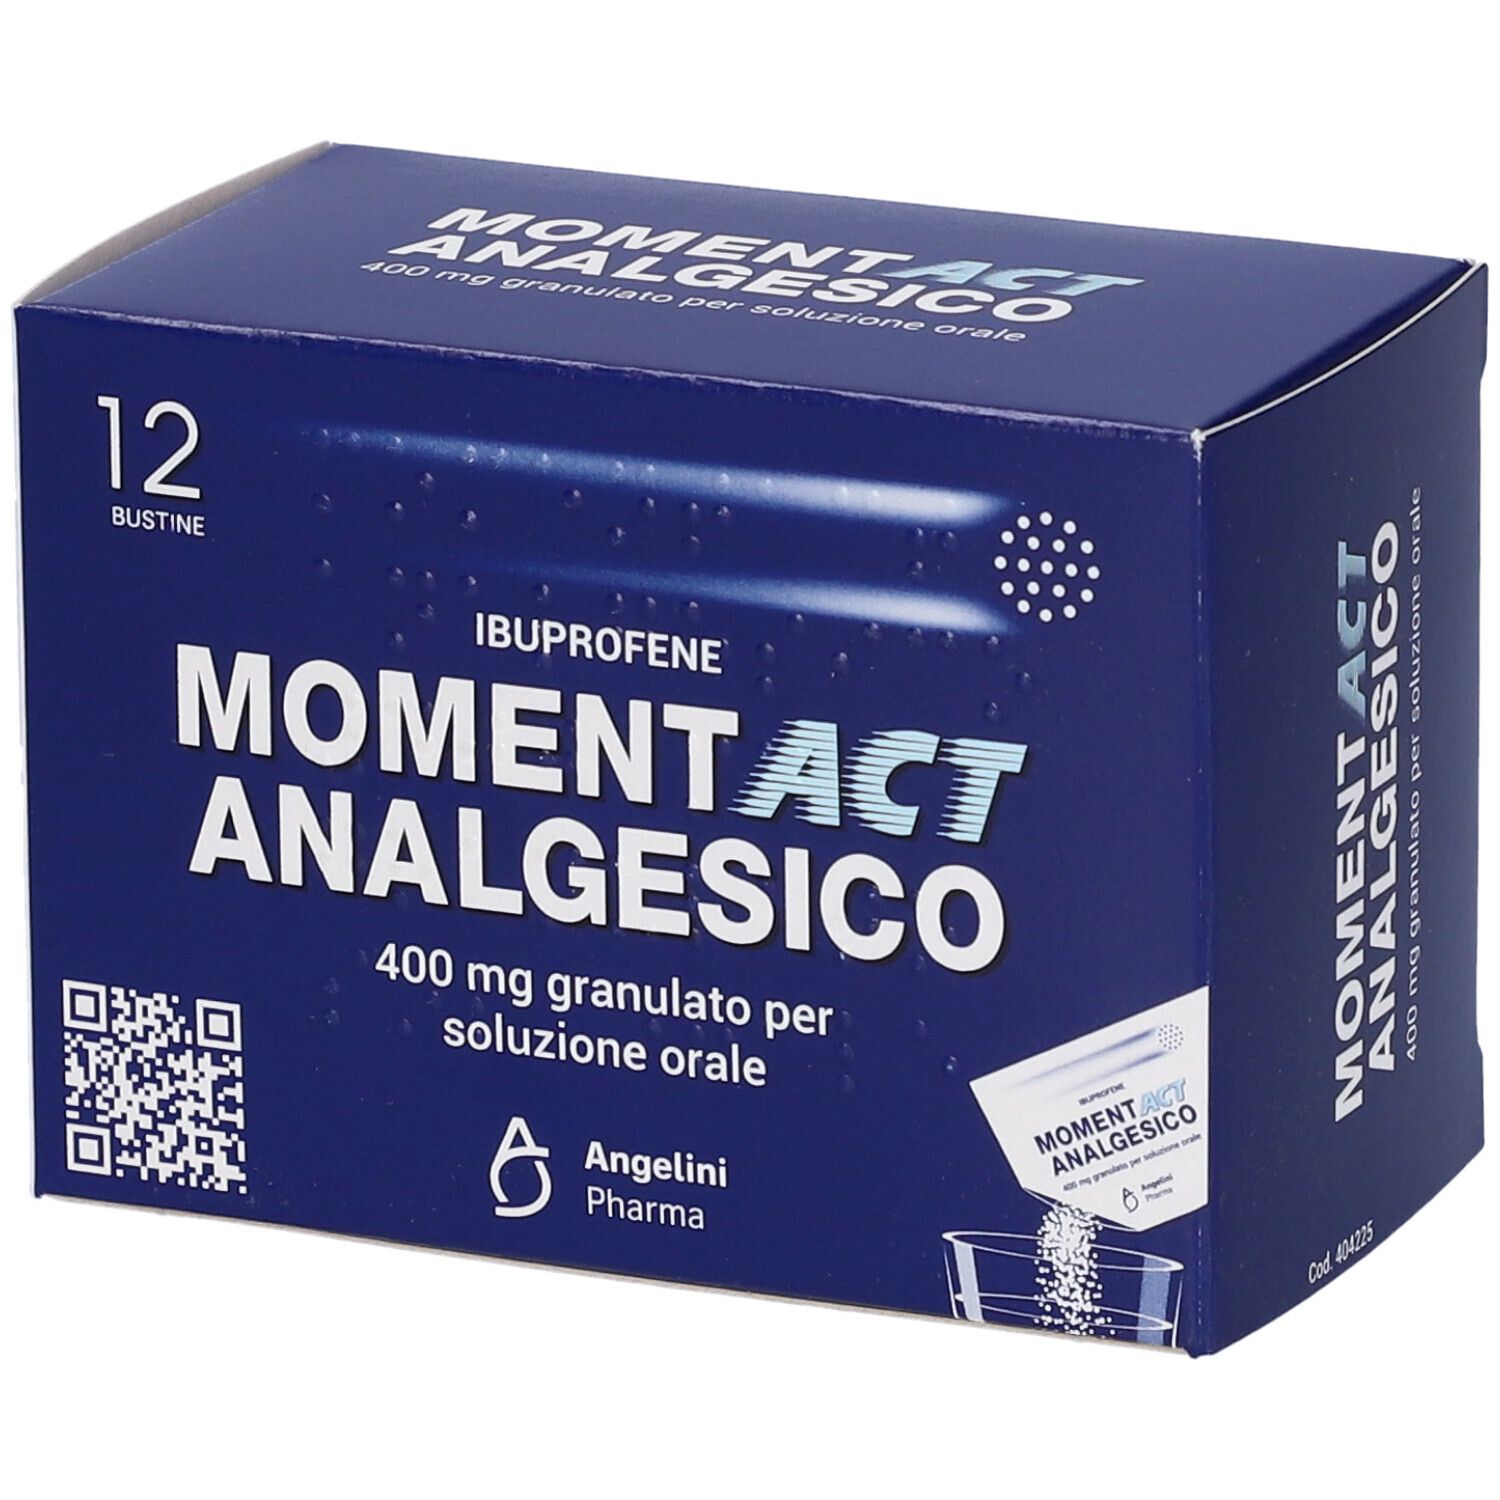 MOMENTACT ANALGESICO 400 mg Granulato per soluzione orale